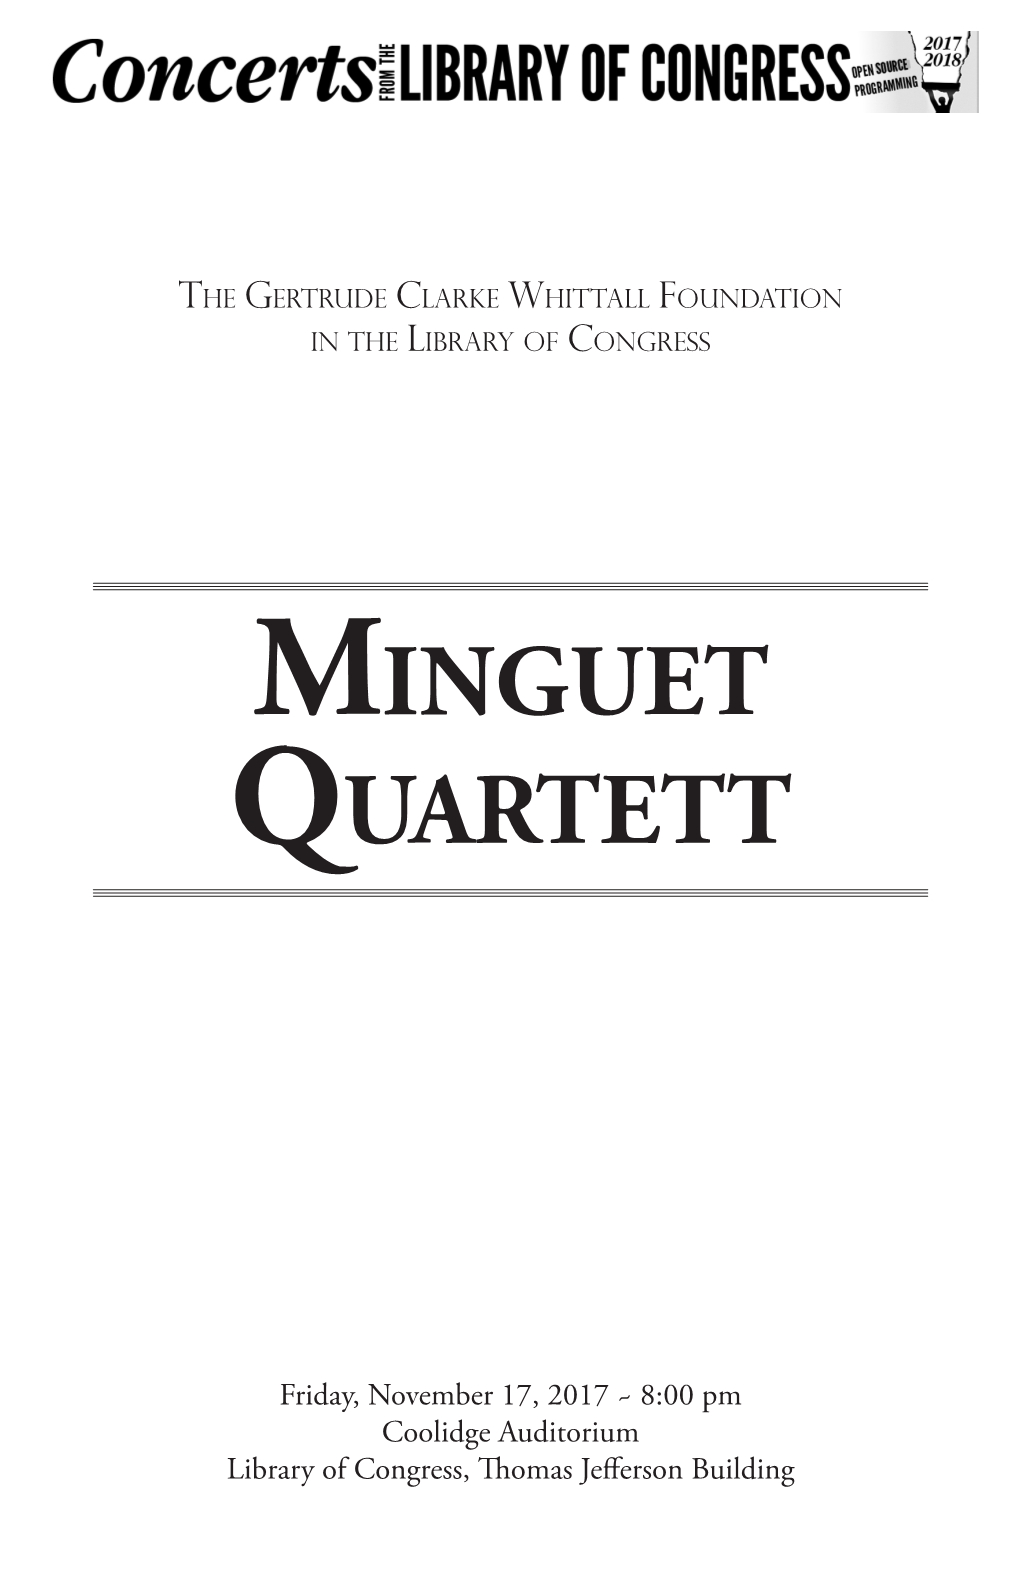 Minguet Quartett